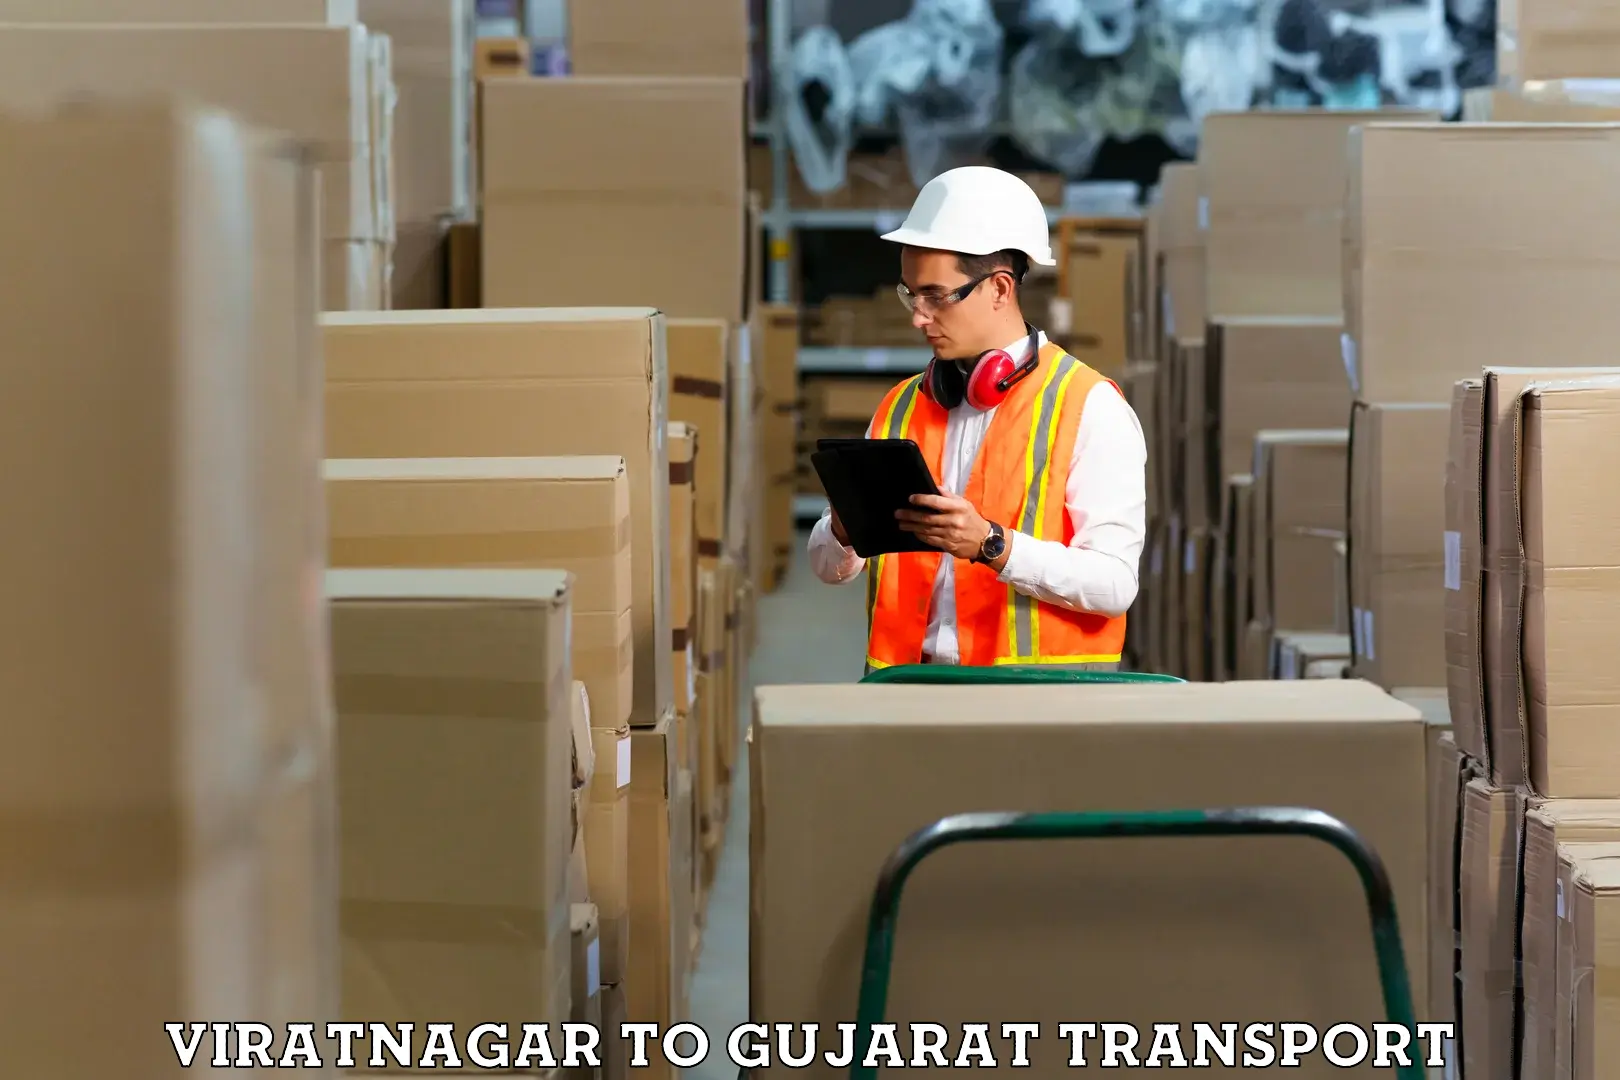 Delivery service Viratnagar to IIIT Vadodara